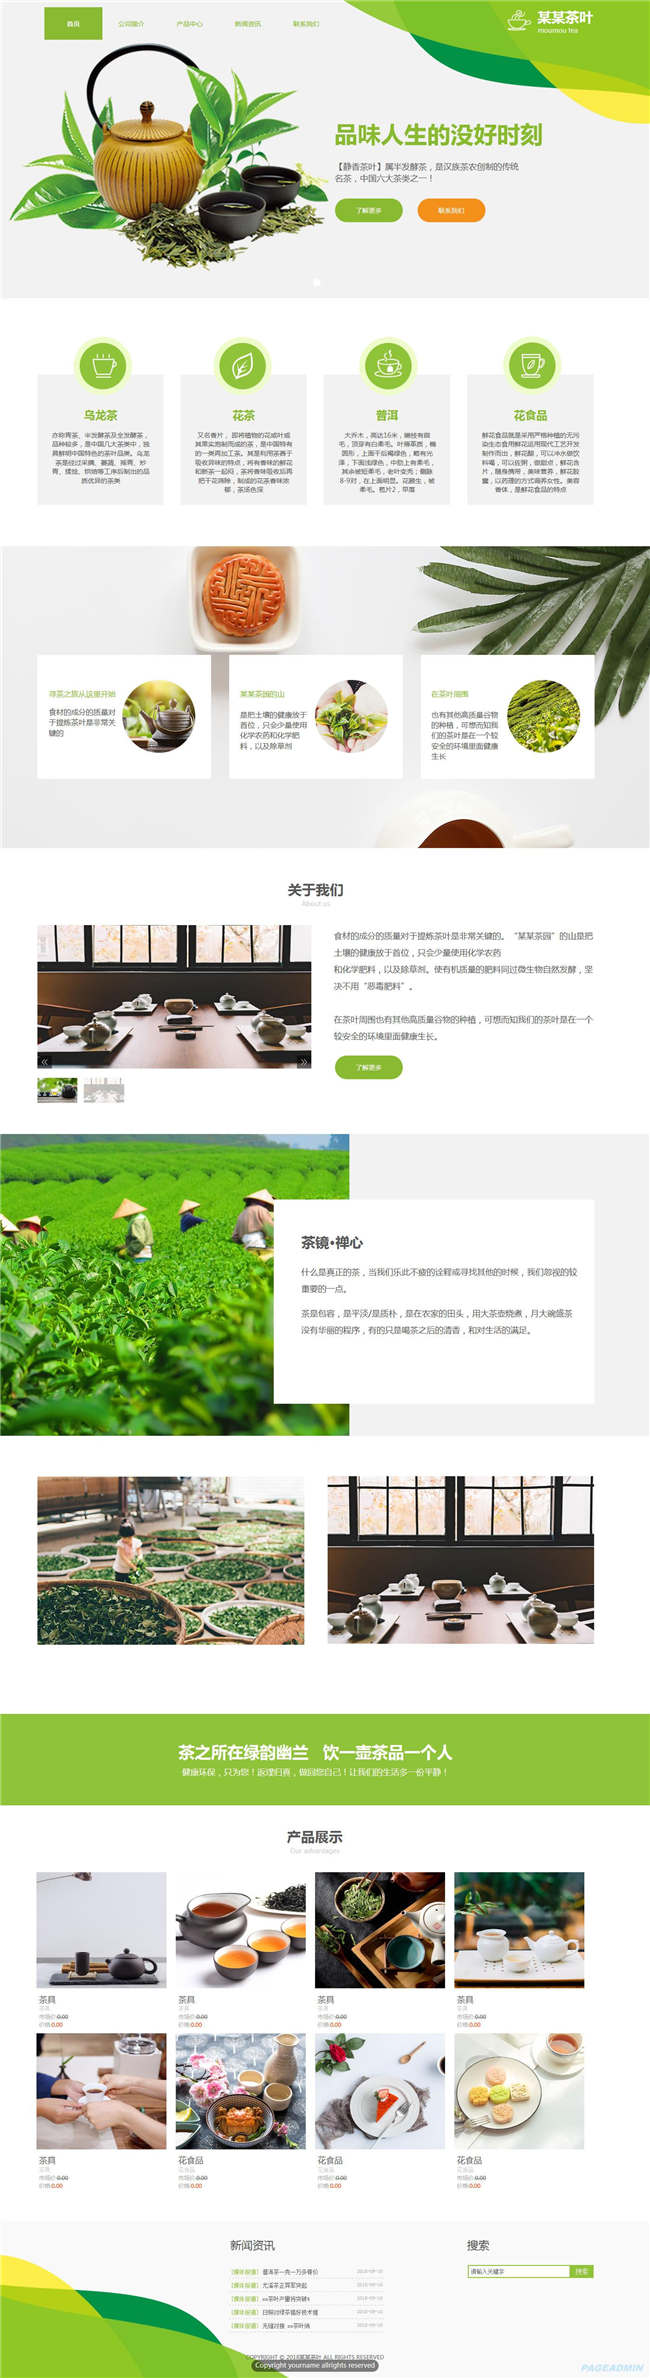 茶叶公司种植食品饮料生鲜茶酒网站主题模板下载演示图